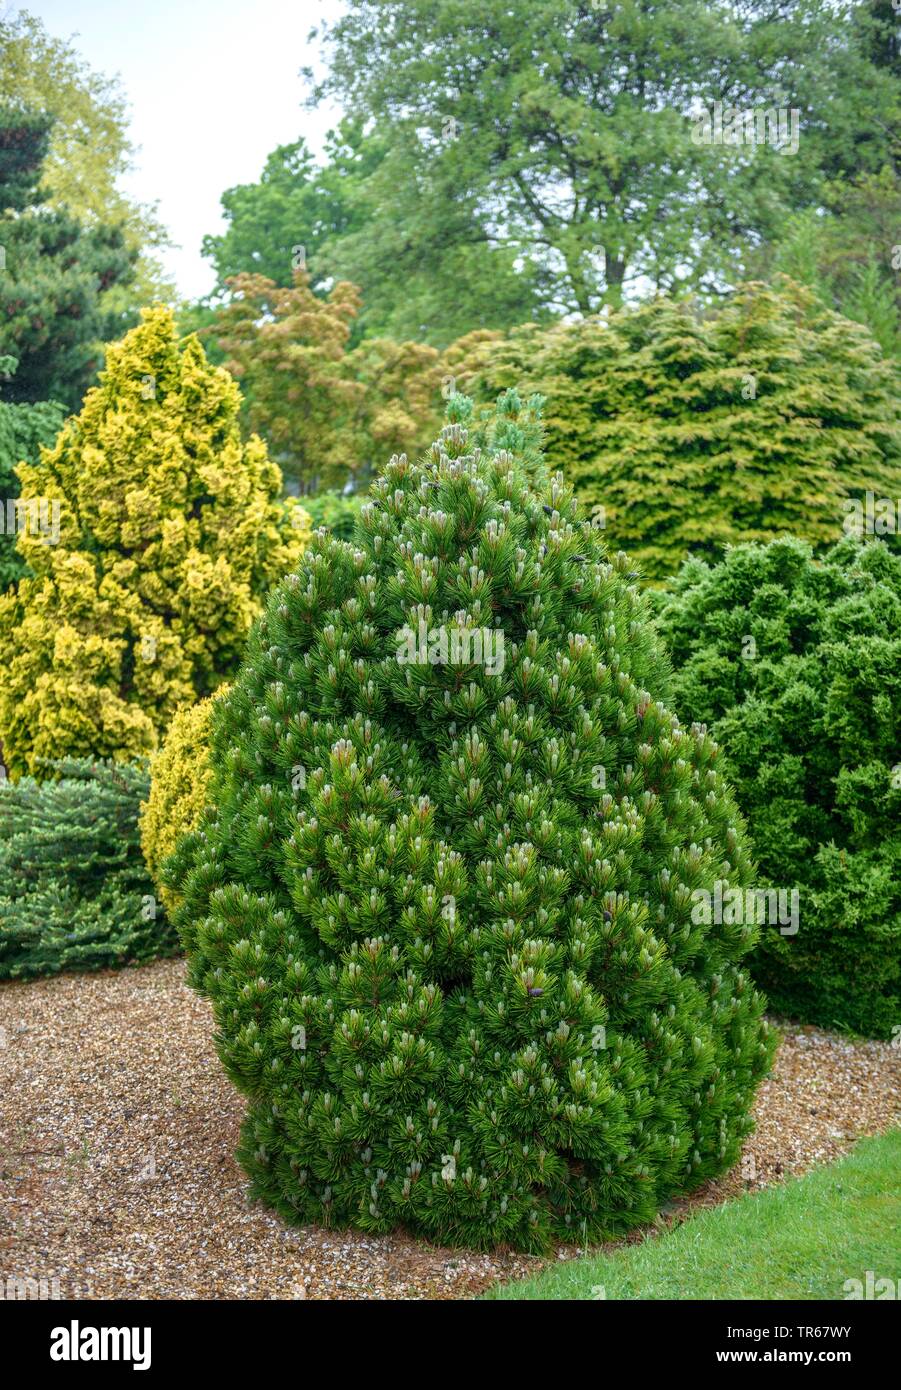 Bosnian Pine, Palebark Pine (Pinus heldreichii 'Smidtii', Pinus heldreichii Smidtii), cultivar Smidtii, Germany Stock Photo